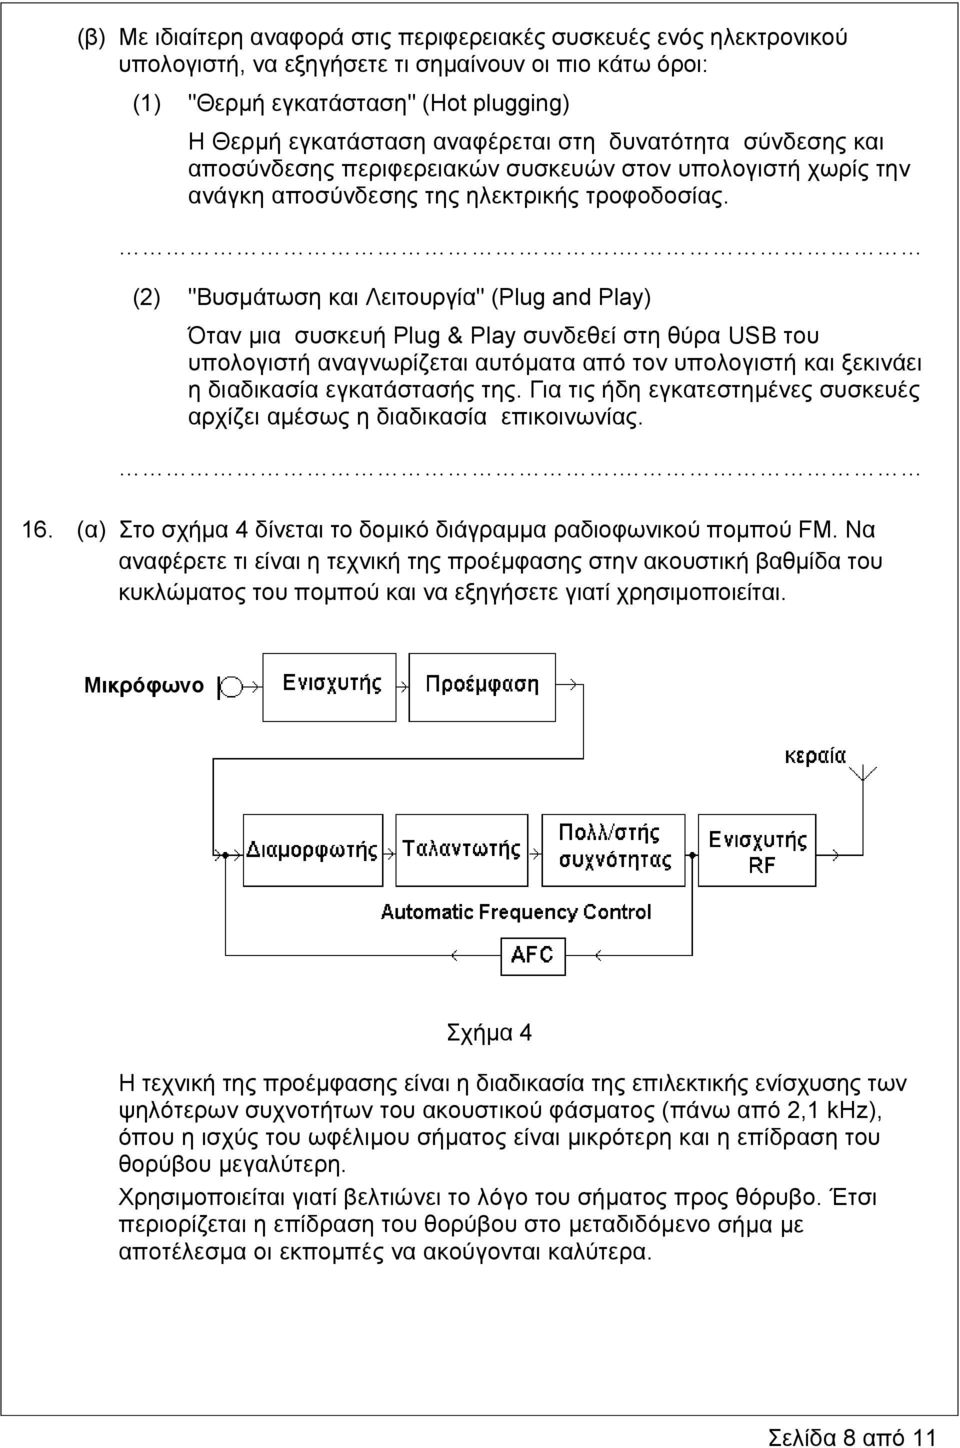 (2) "Βυσμάτωση και Λειτουργία" (Plug and Play) Όταν μια συσκευή Plug & Play συνδεθεί στη θύρα USB του υπολογιστή αναγνωρίζεται αυτόματα από τον υπολογιστή και ξεκινάει η διαδικασία εγκατάστασής της.